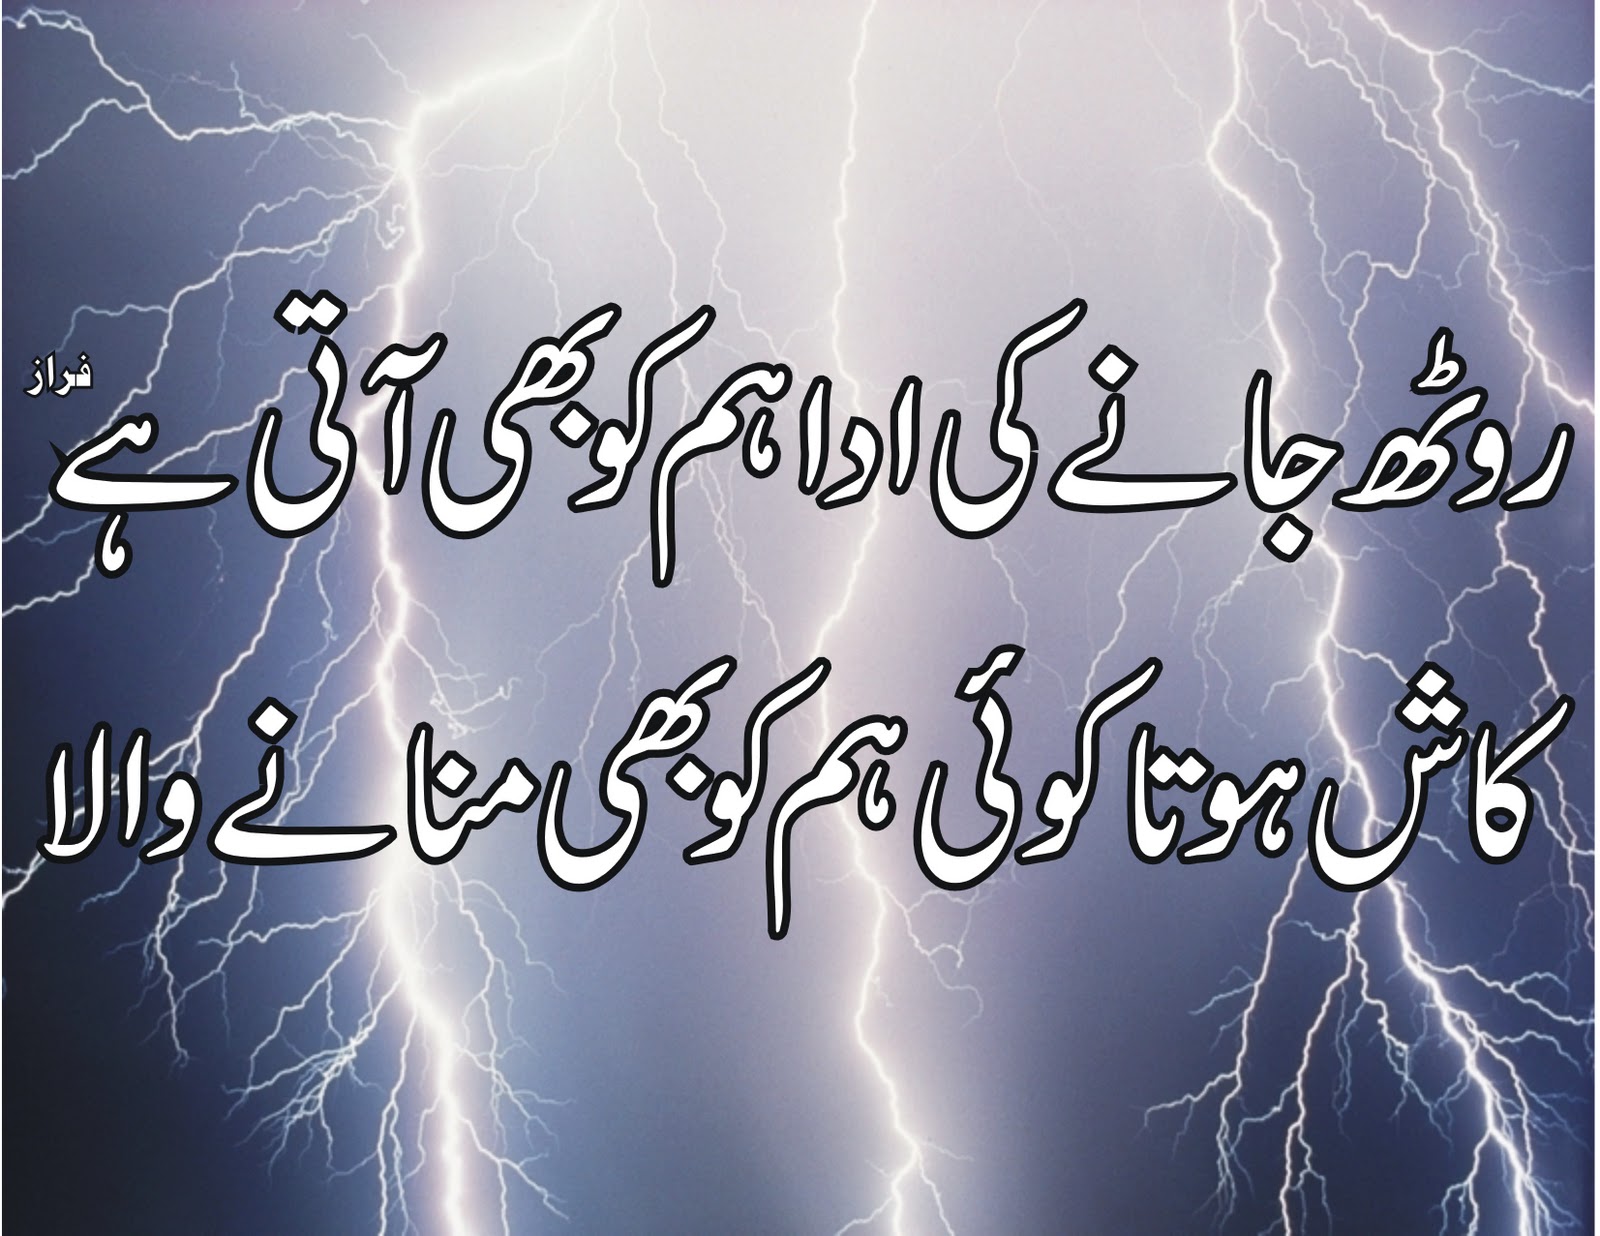 Urdu Poetry Urdu Shayari Love Poetry Sad Poetry pic poetry in urdu |